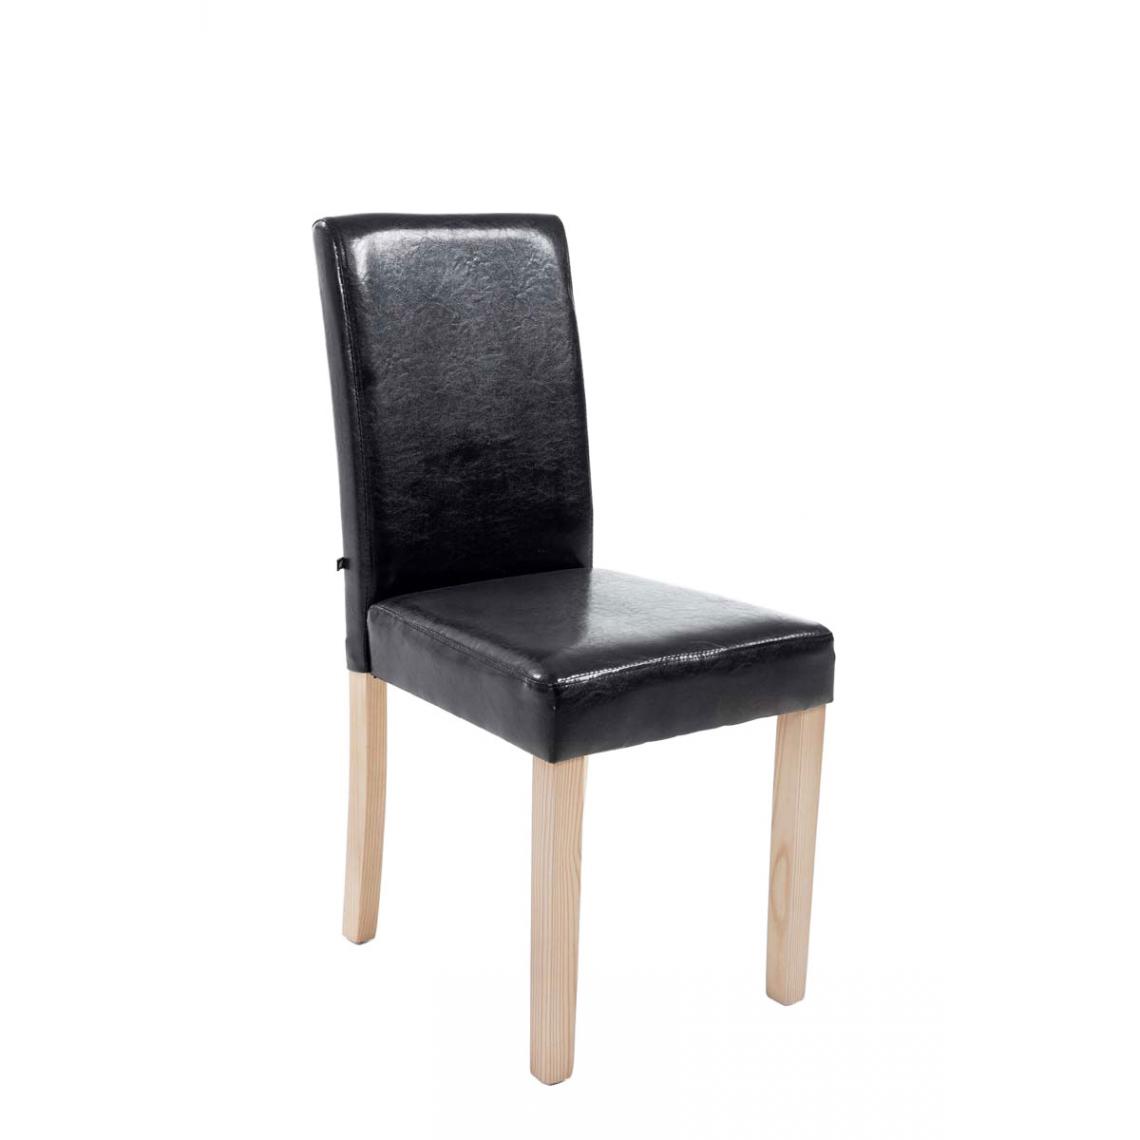 Icaverne - Esthetique Chaise de salle à manger gamme Rabat natura couleur noir - Chaises